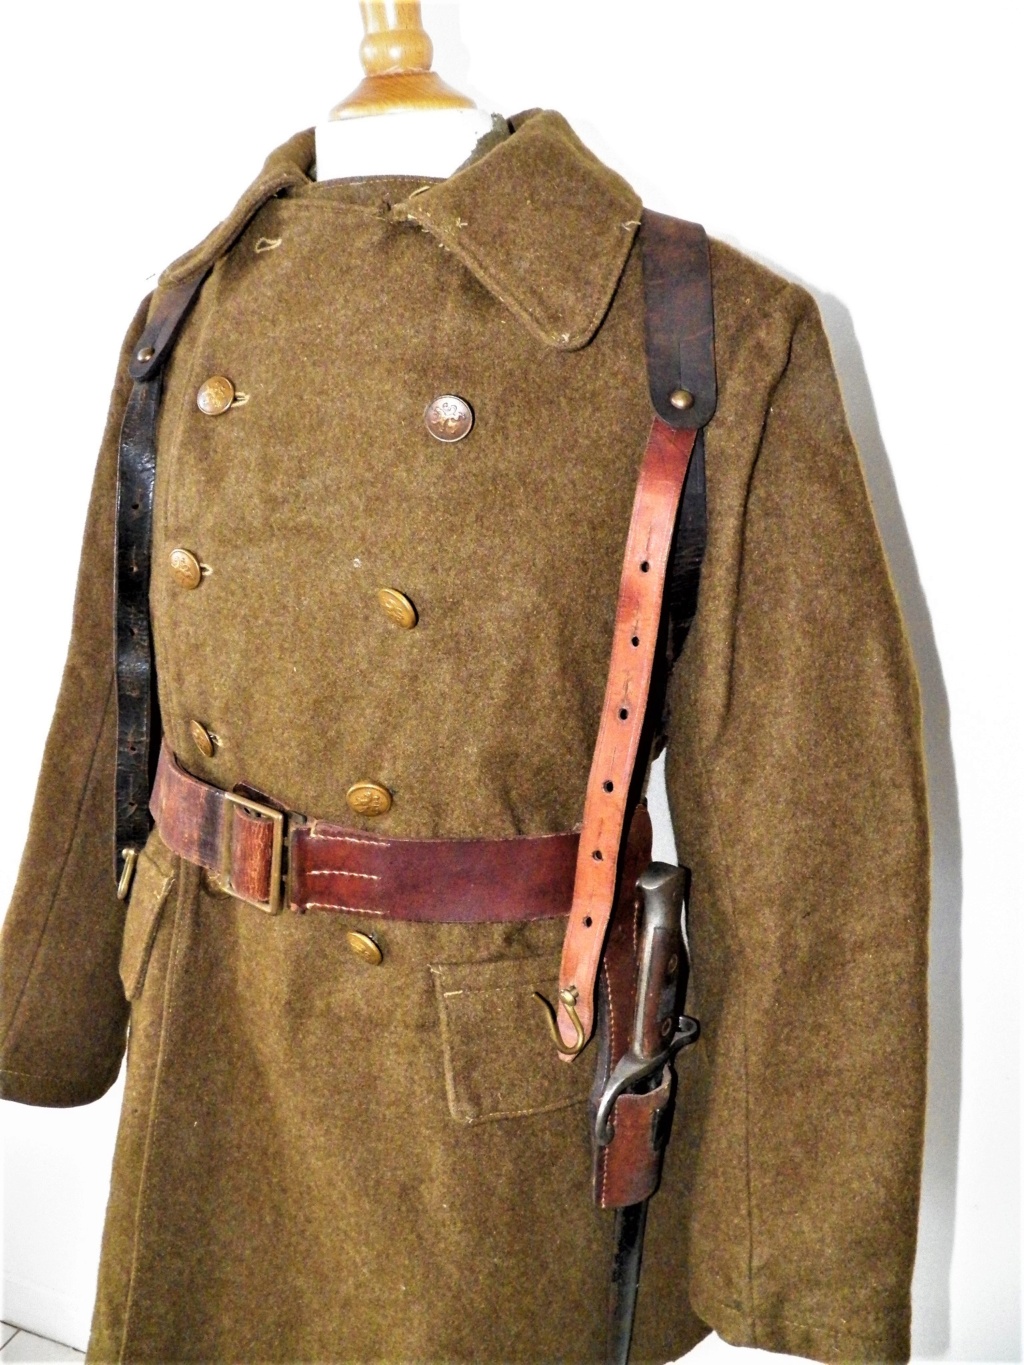 Les tenues et équipements du soldat belge - Page 4 103_0112